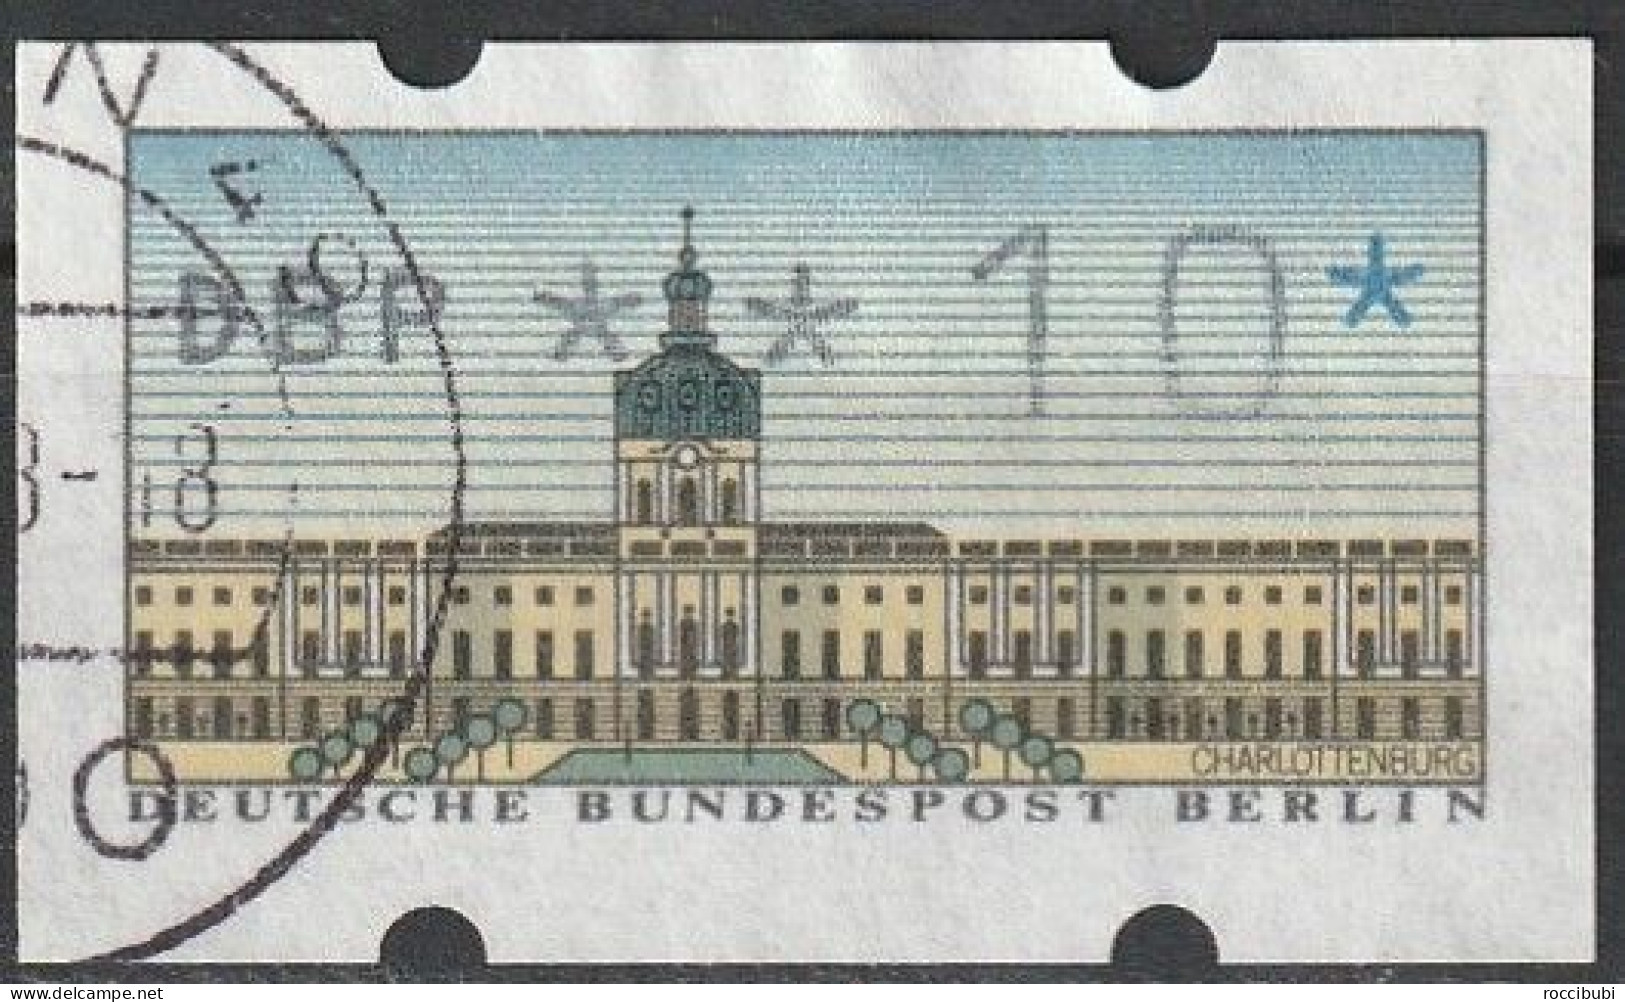 Berlin ATM 0,10 DM - Machine Labels [ATM]